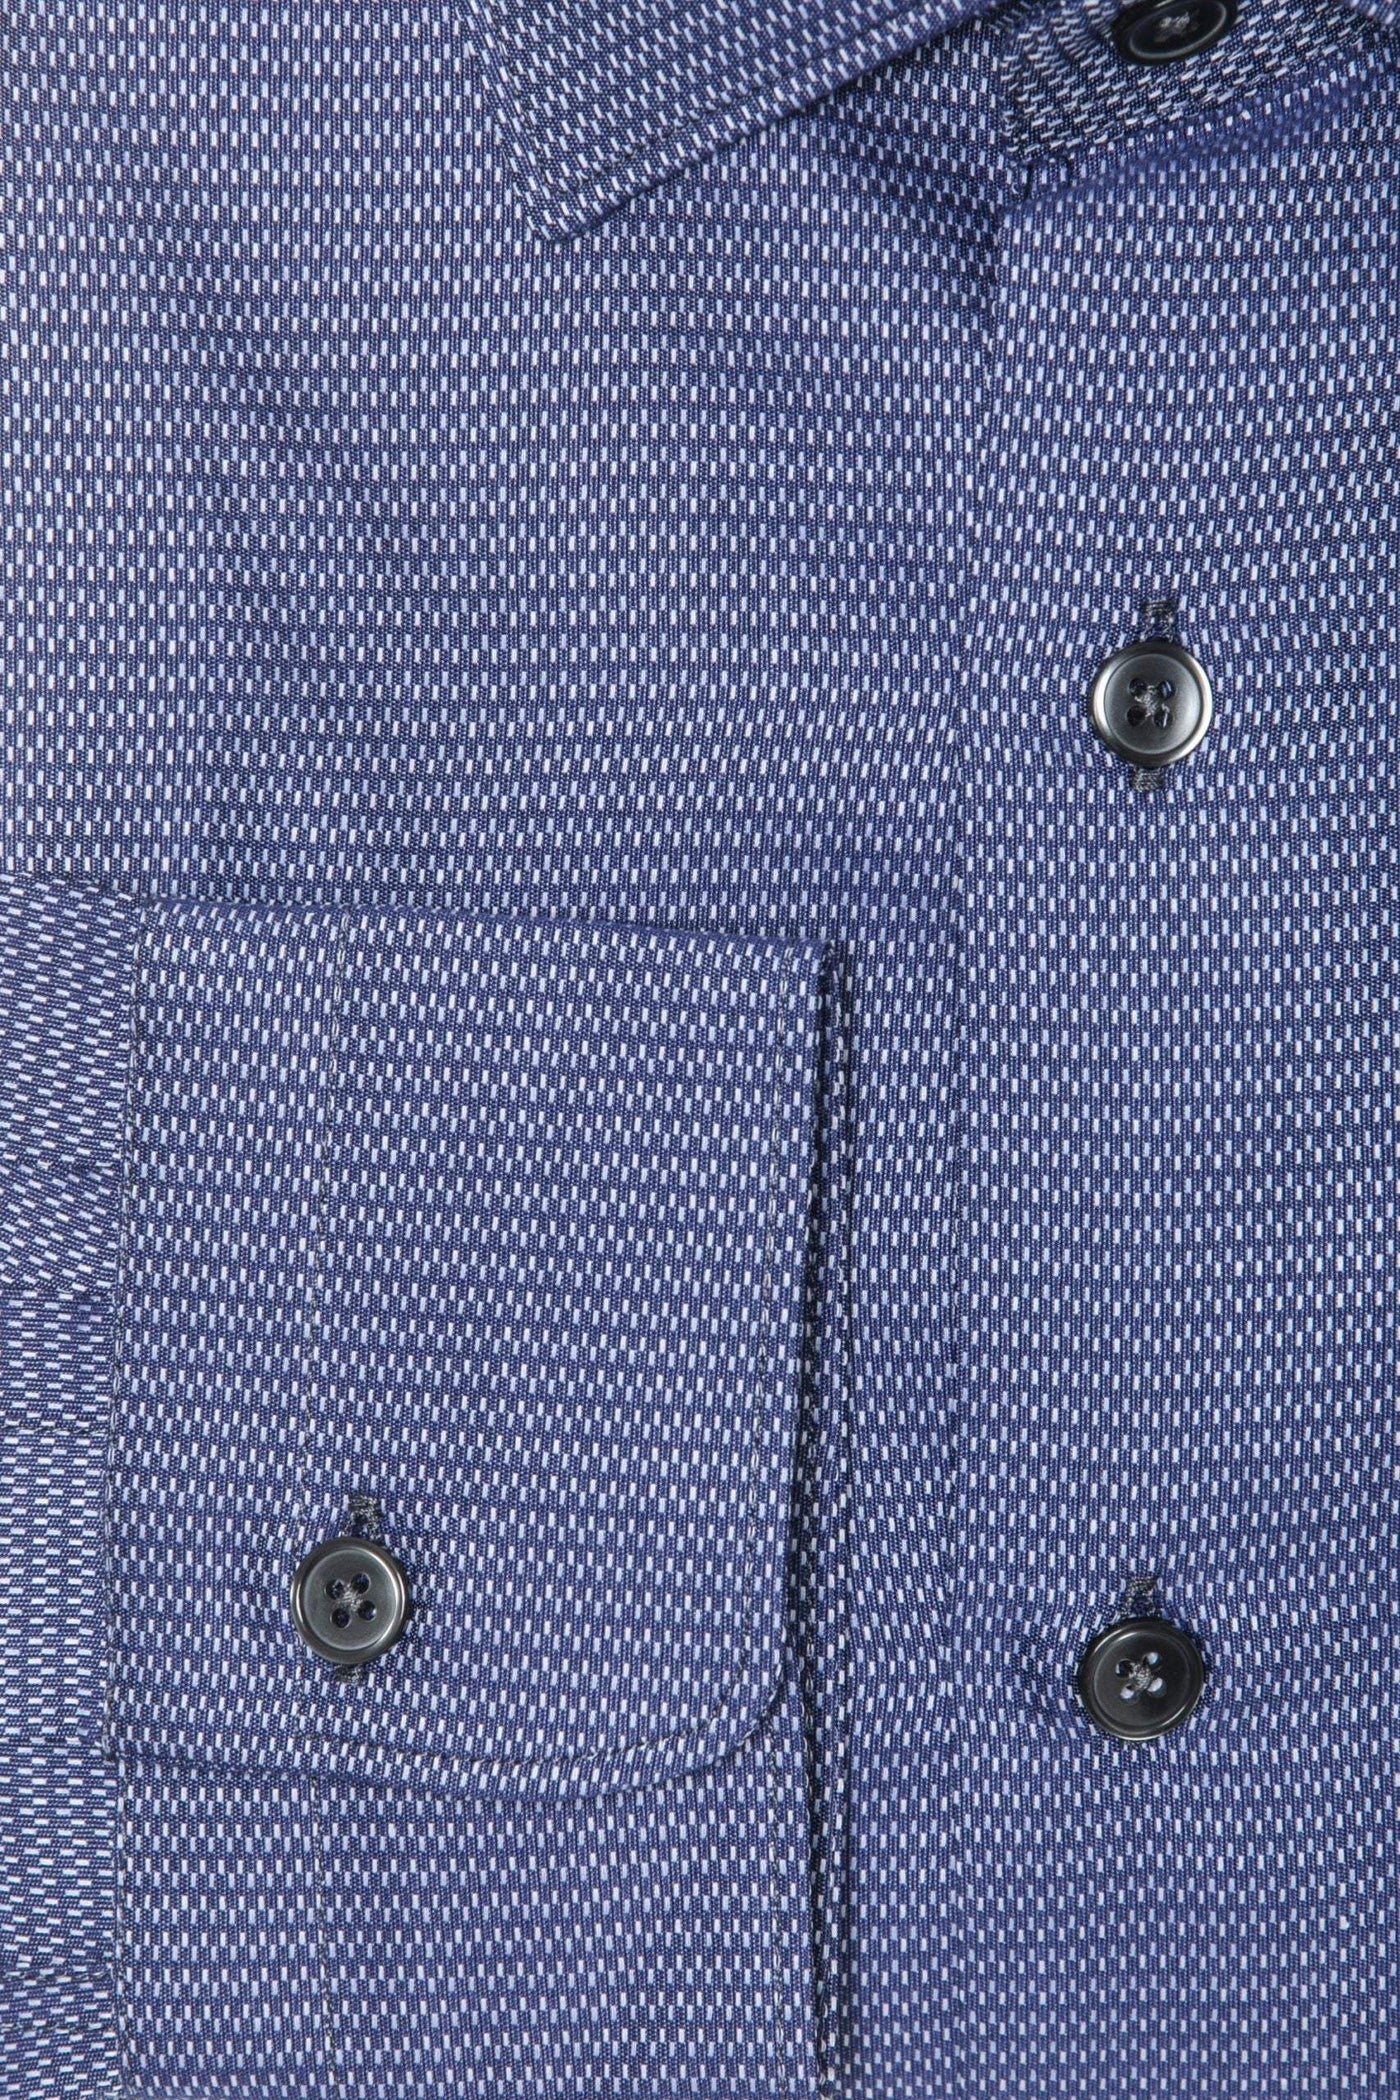 Robert Friedman Blue Cotton Shirt #men, Blue, feed-1, IT40 | M, Robert Friedman, Shirts - Men - Clothing at SEYMAYKA